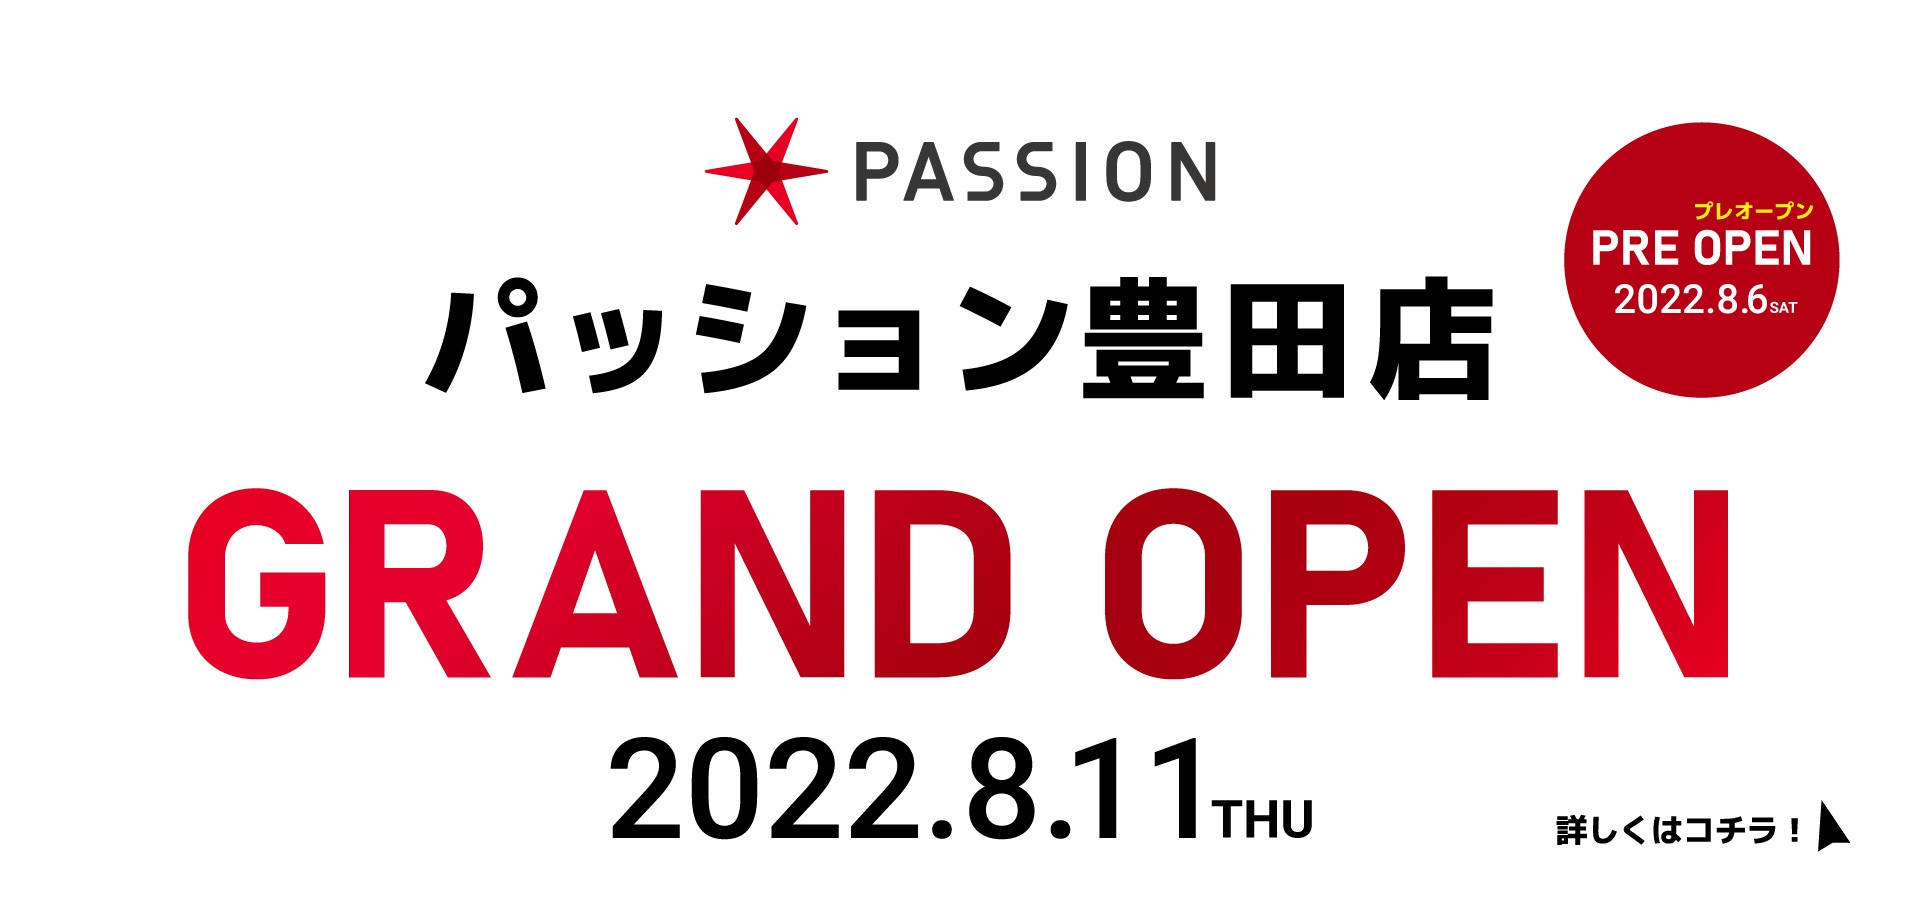 パッション豊田店GRAND OPEN 2022.8.11 THU